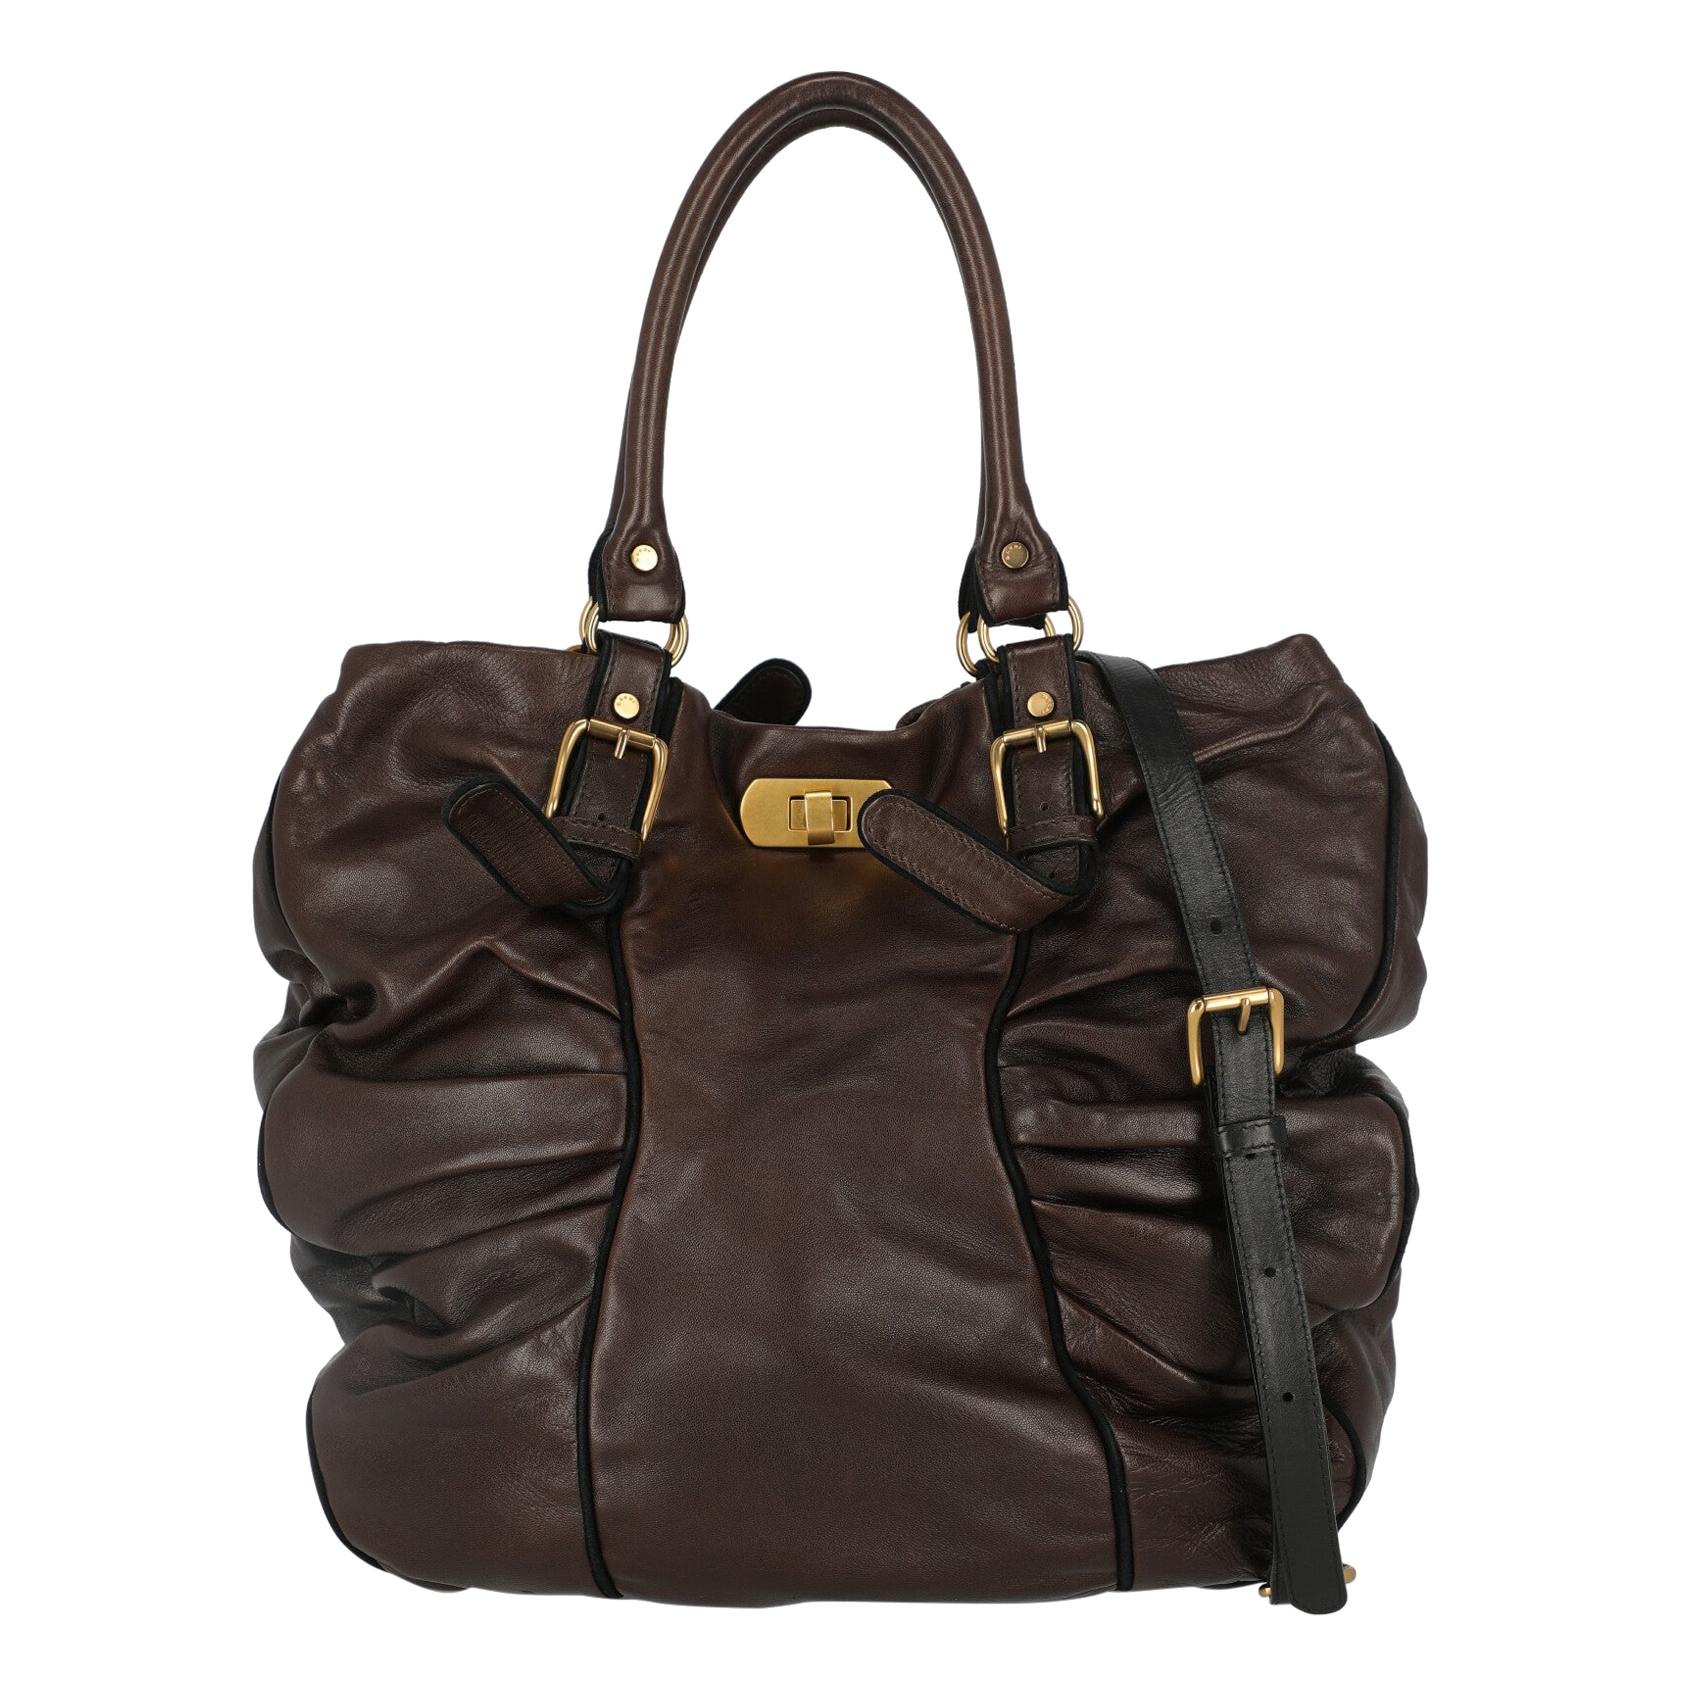 Marni Woman Handbag Brown Leather For Sale